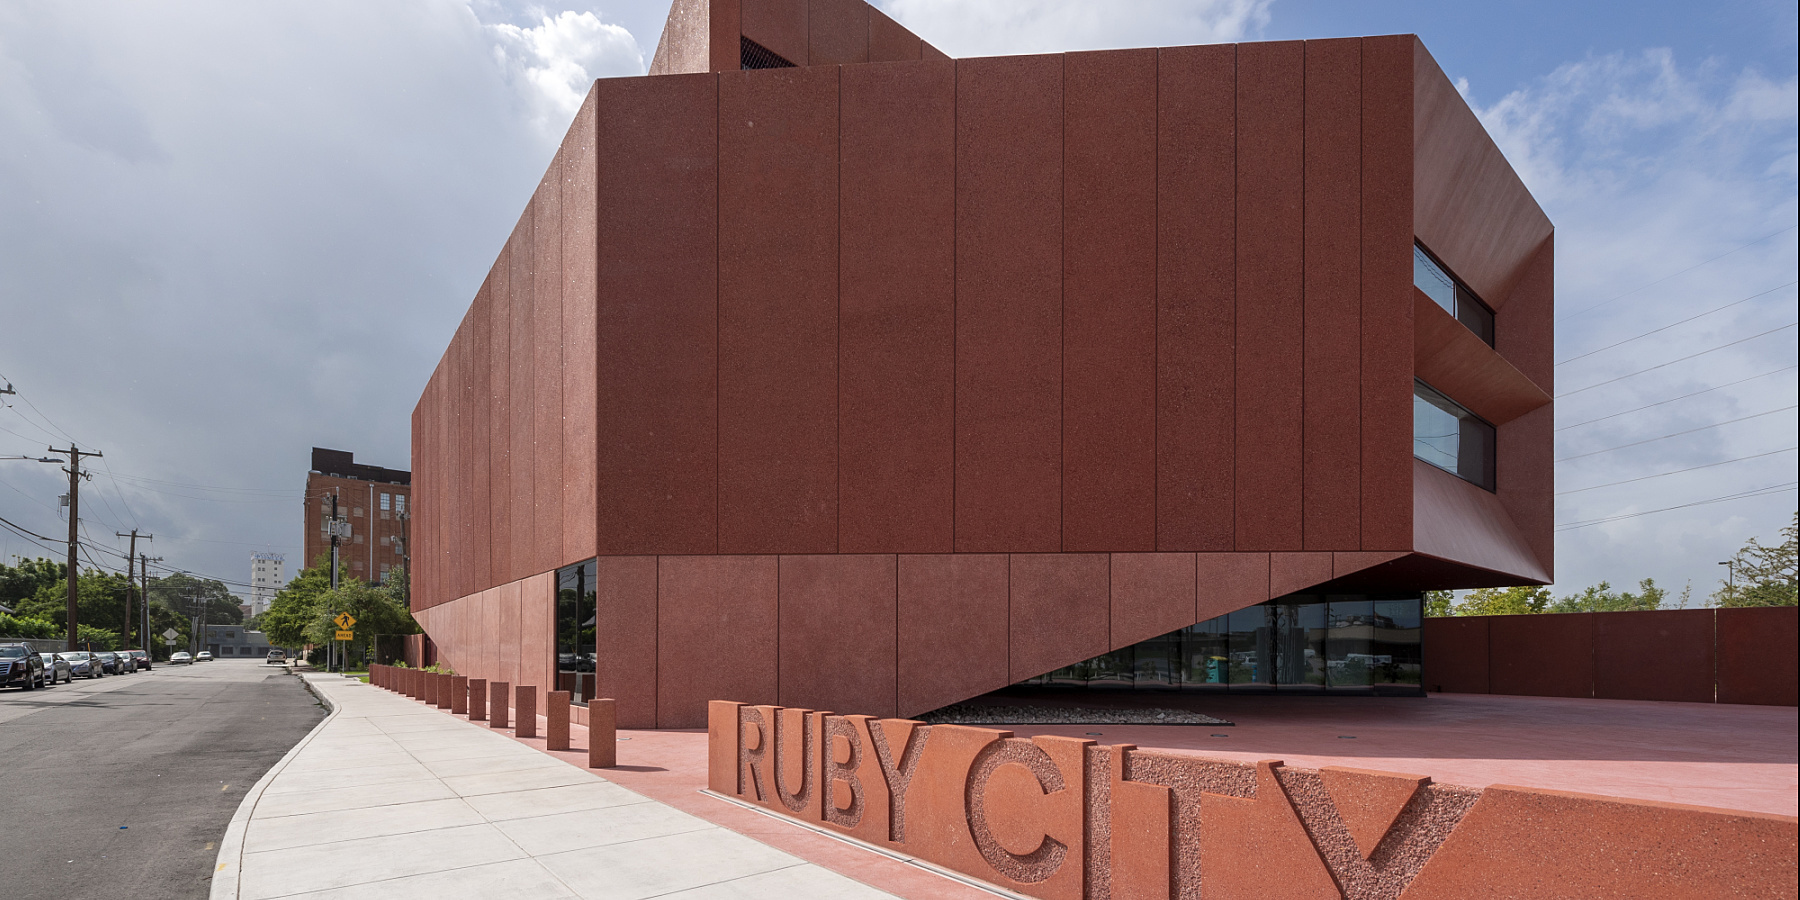 Nouvel éclairage ERCO pour la Galerie Ruby City au Texas, San Antonio, Etats-Unis